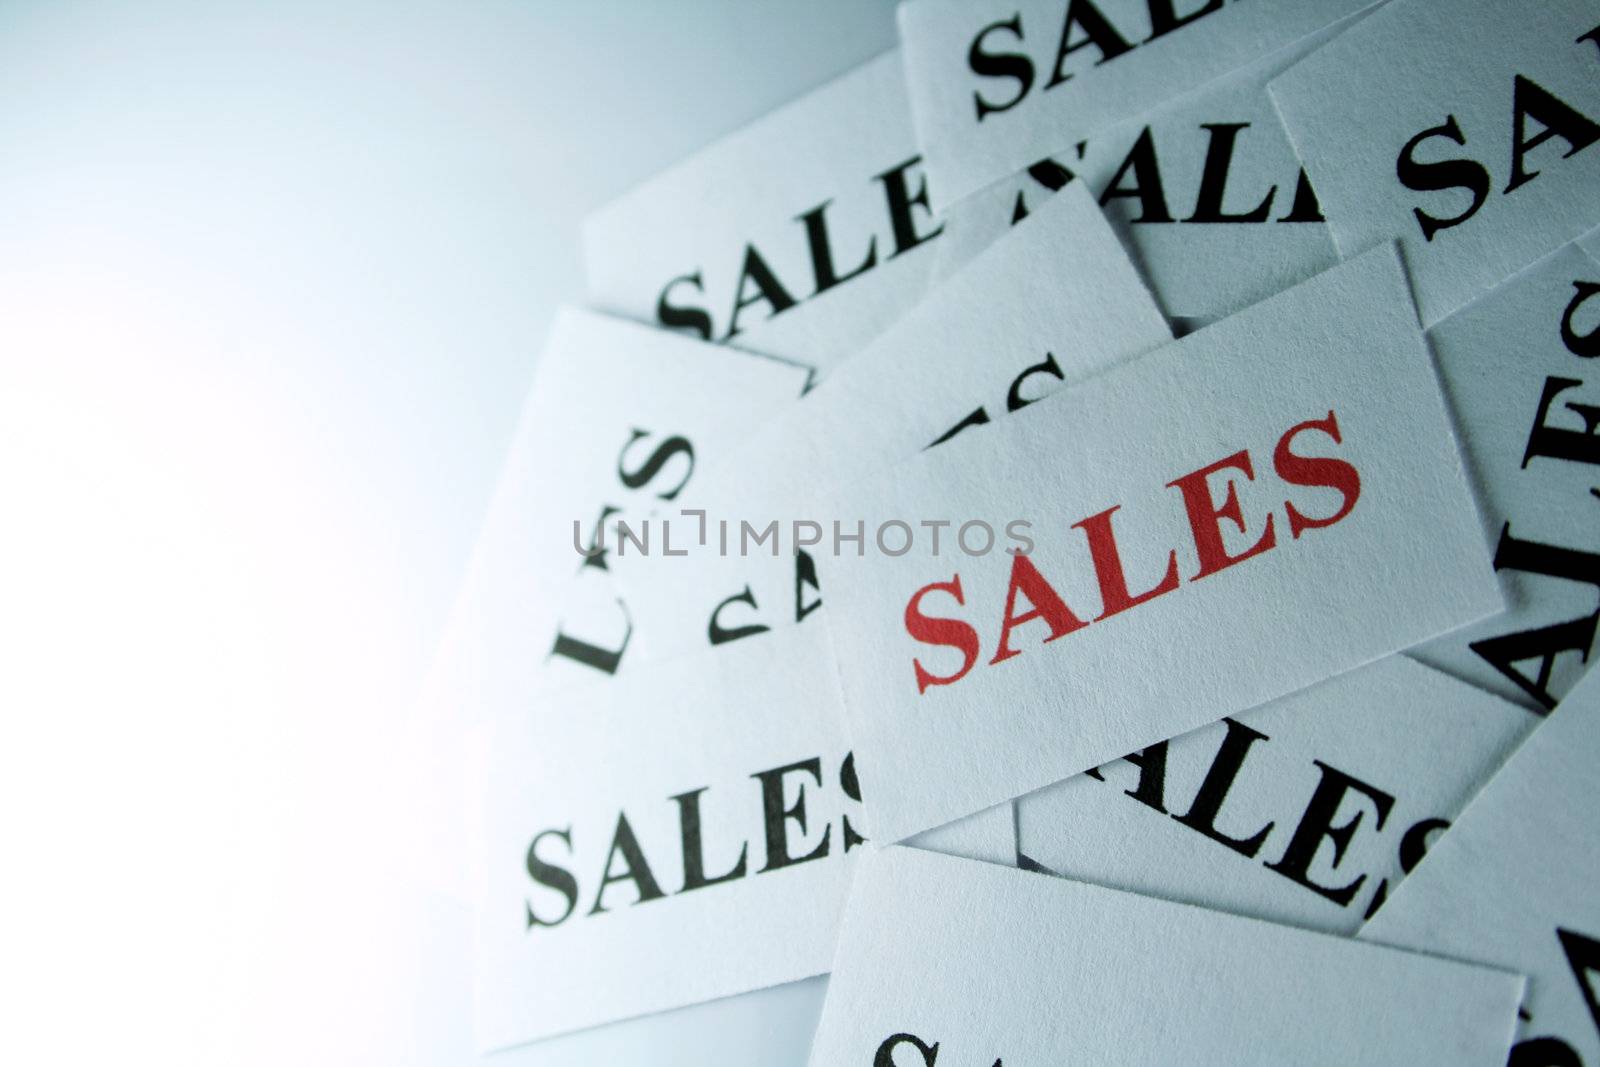 Sales by Hasenonkel